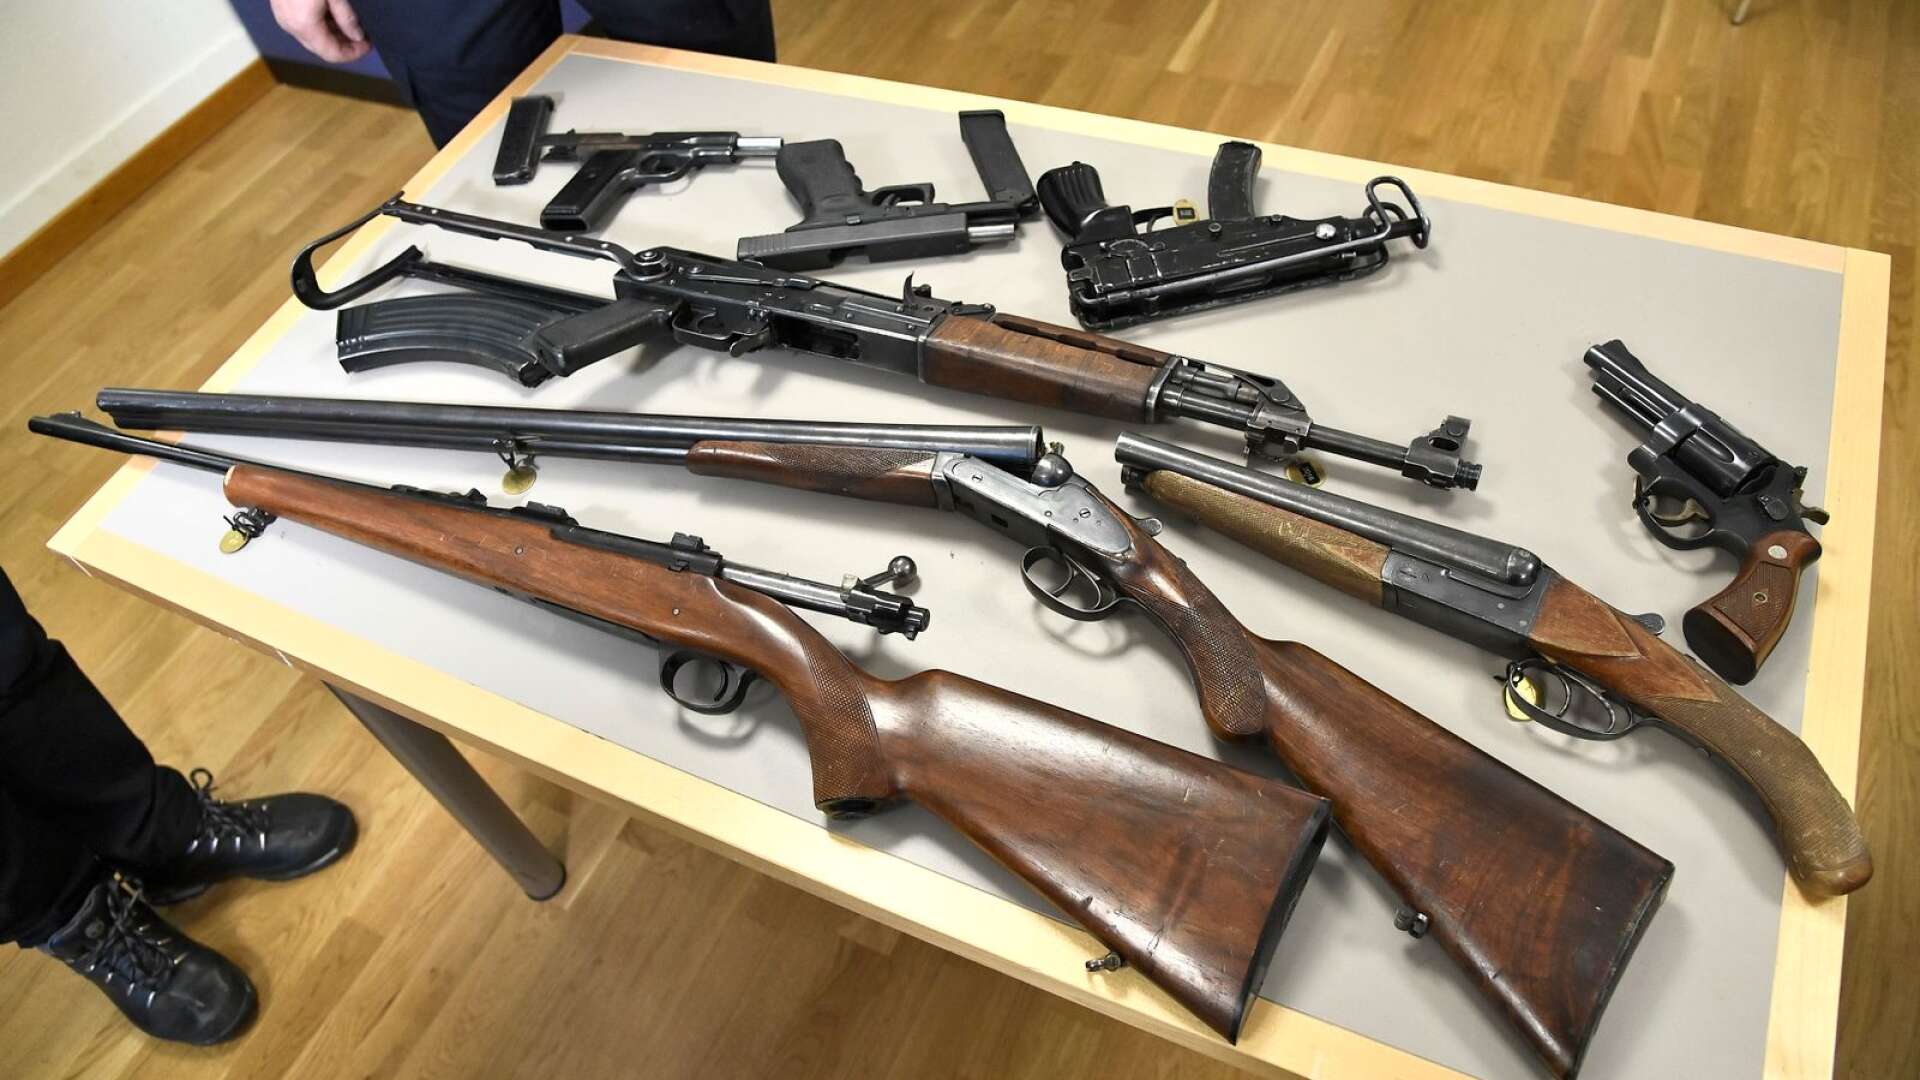 Det är allmänt känt att de flesta illegala vapen är insmugglade från företrädesvis Balkan, skriver Pia Clerté.